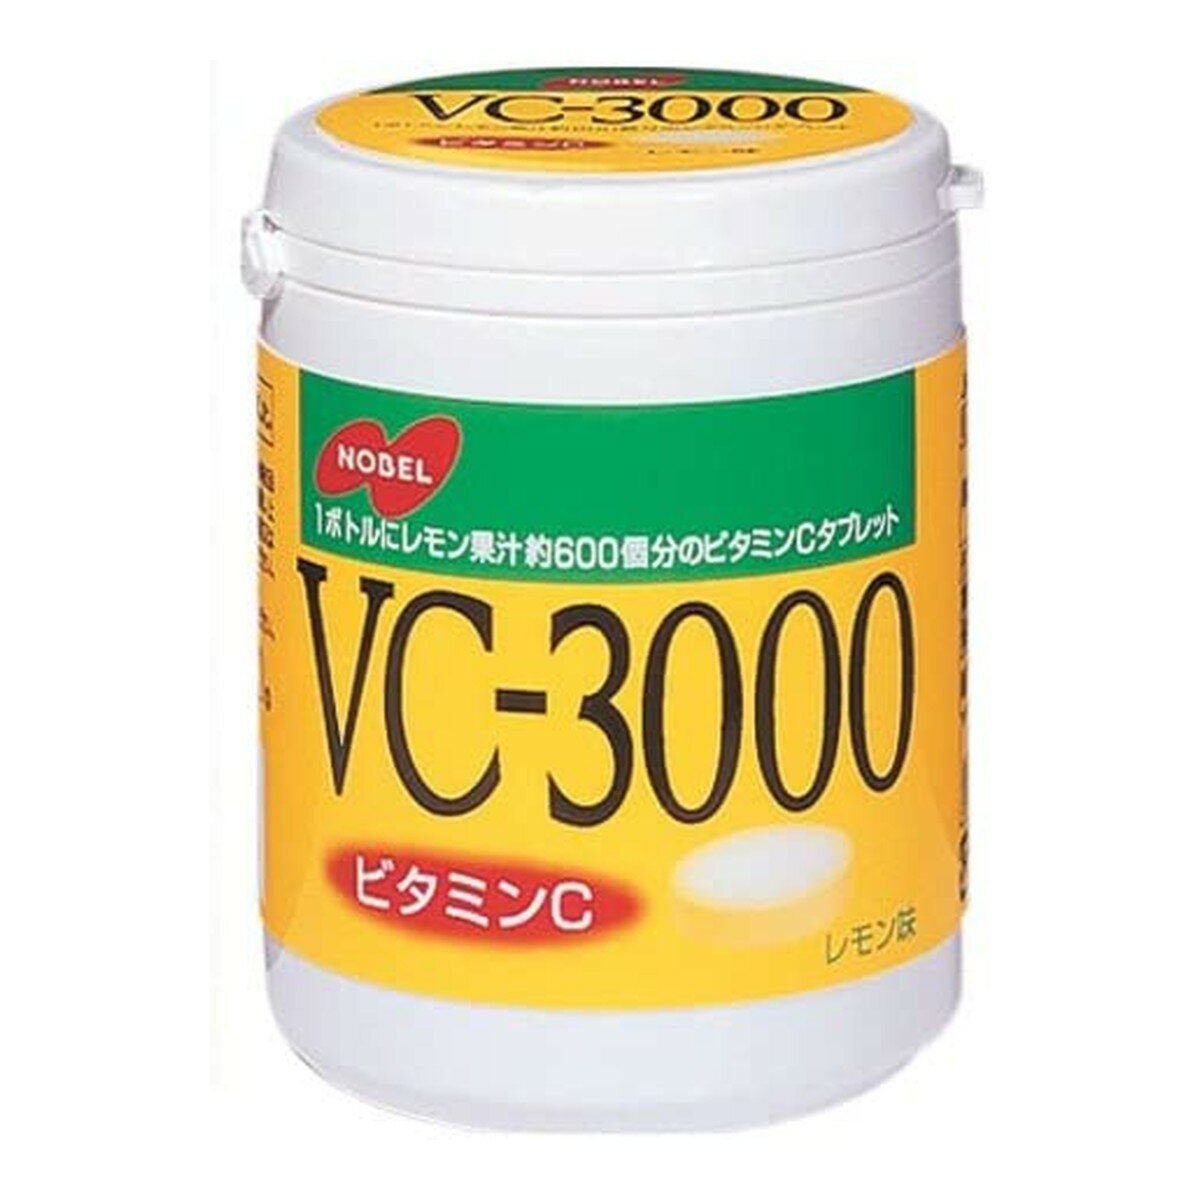 【送料込・まとめ買い×24個セット】ノーベル製菓 ノーベル VC-3000 150g レモン味